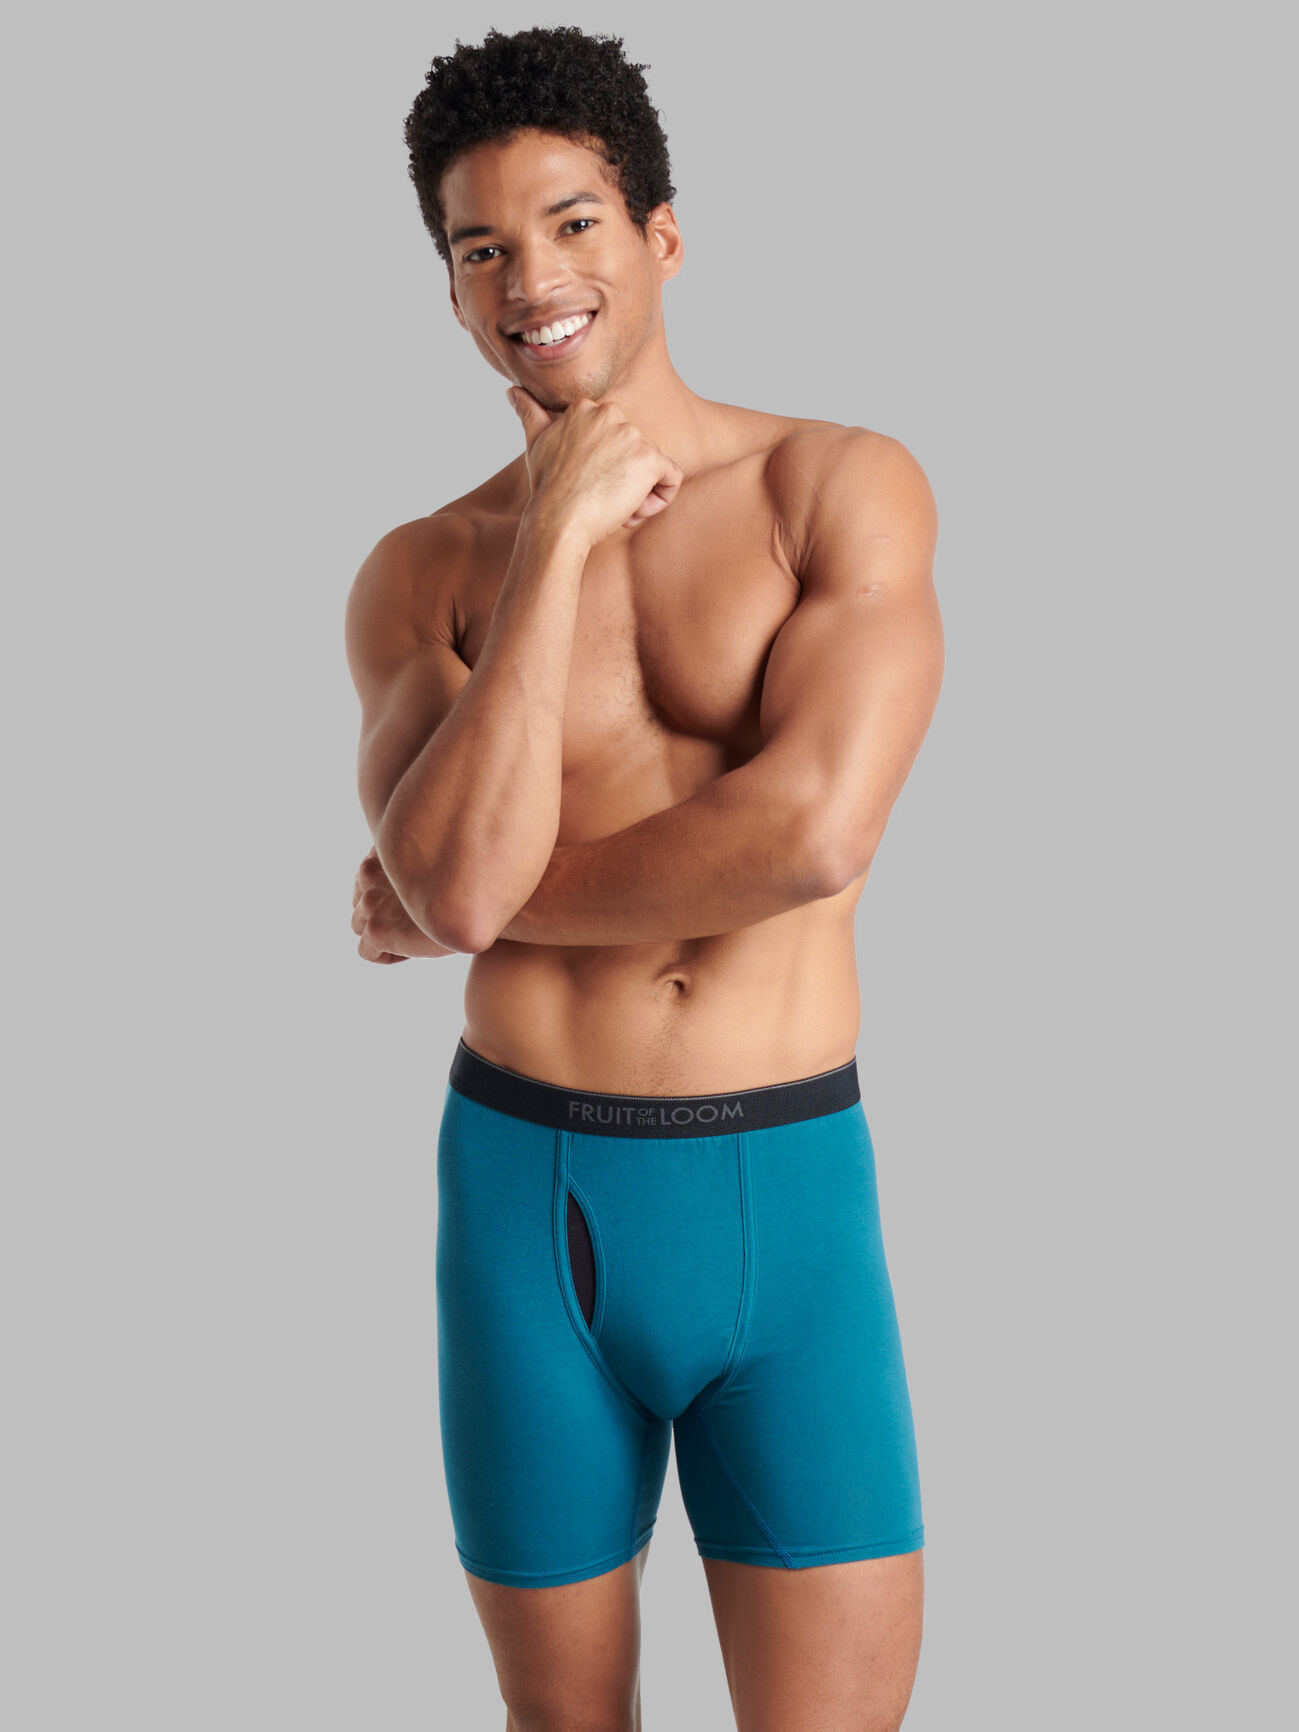 Men's Boxer 95% Cotton Pants Casual Underwear Sports Shorts Dry